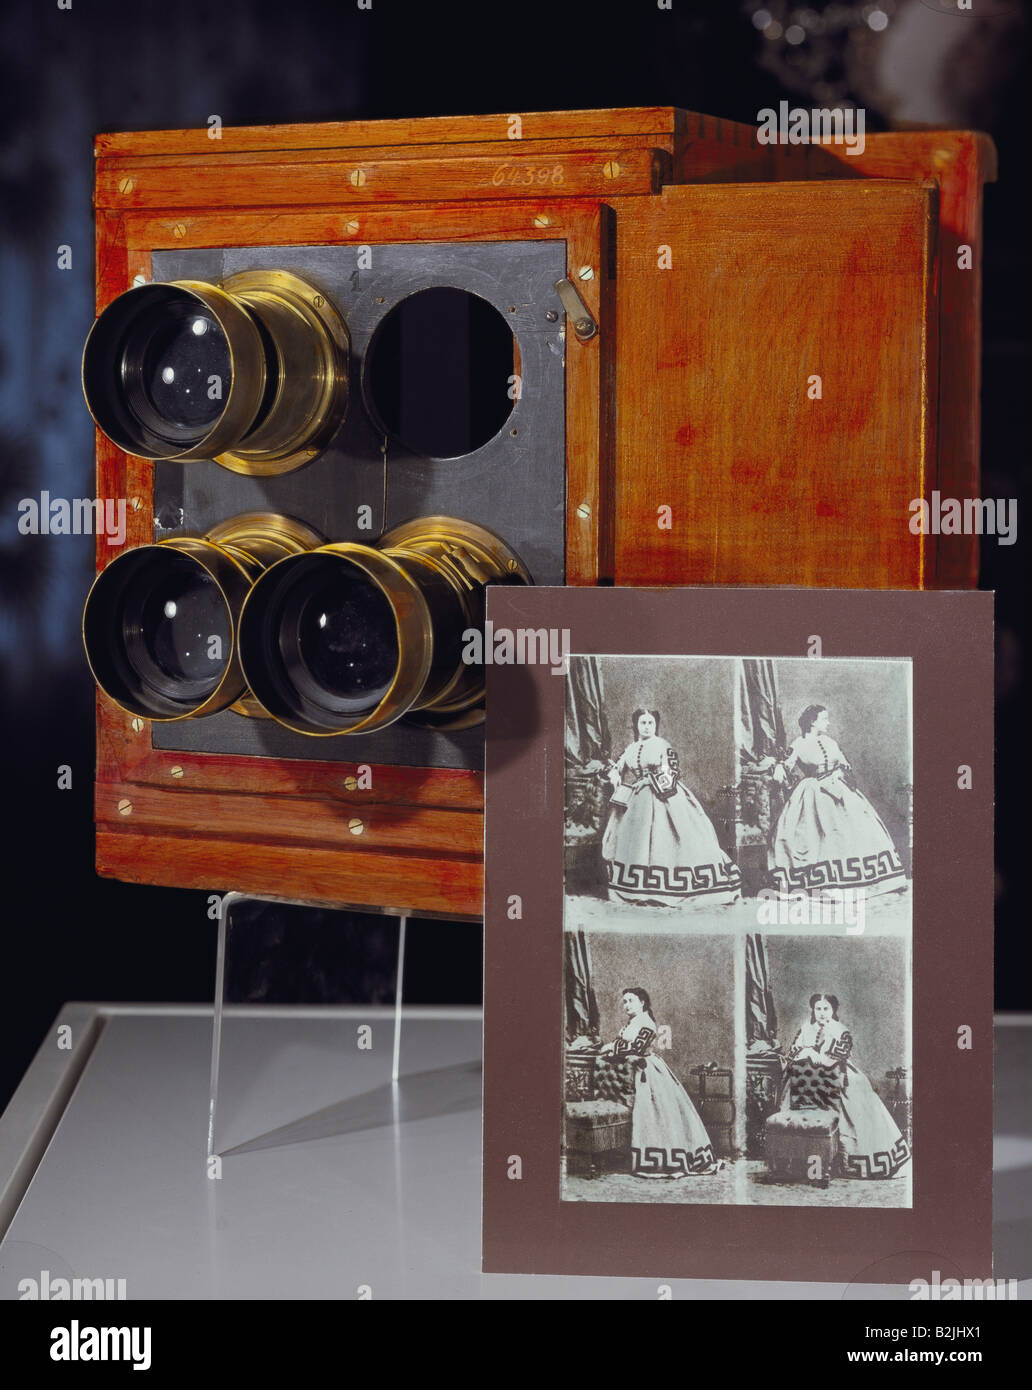 Fotografia, fotocamere, fotocamera quad, design probabilmente di Andre Adolphe-Eugene Duderi (1819 - 1889), produttore sconosciuto, 28 cm x 40 cm x 30 cm, 1854, Foto Stock